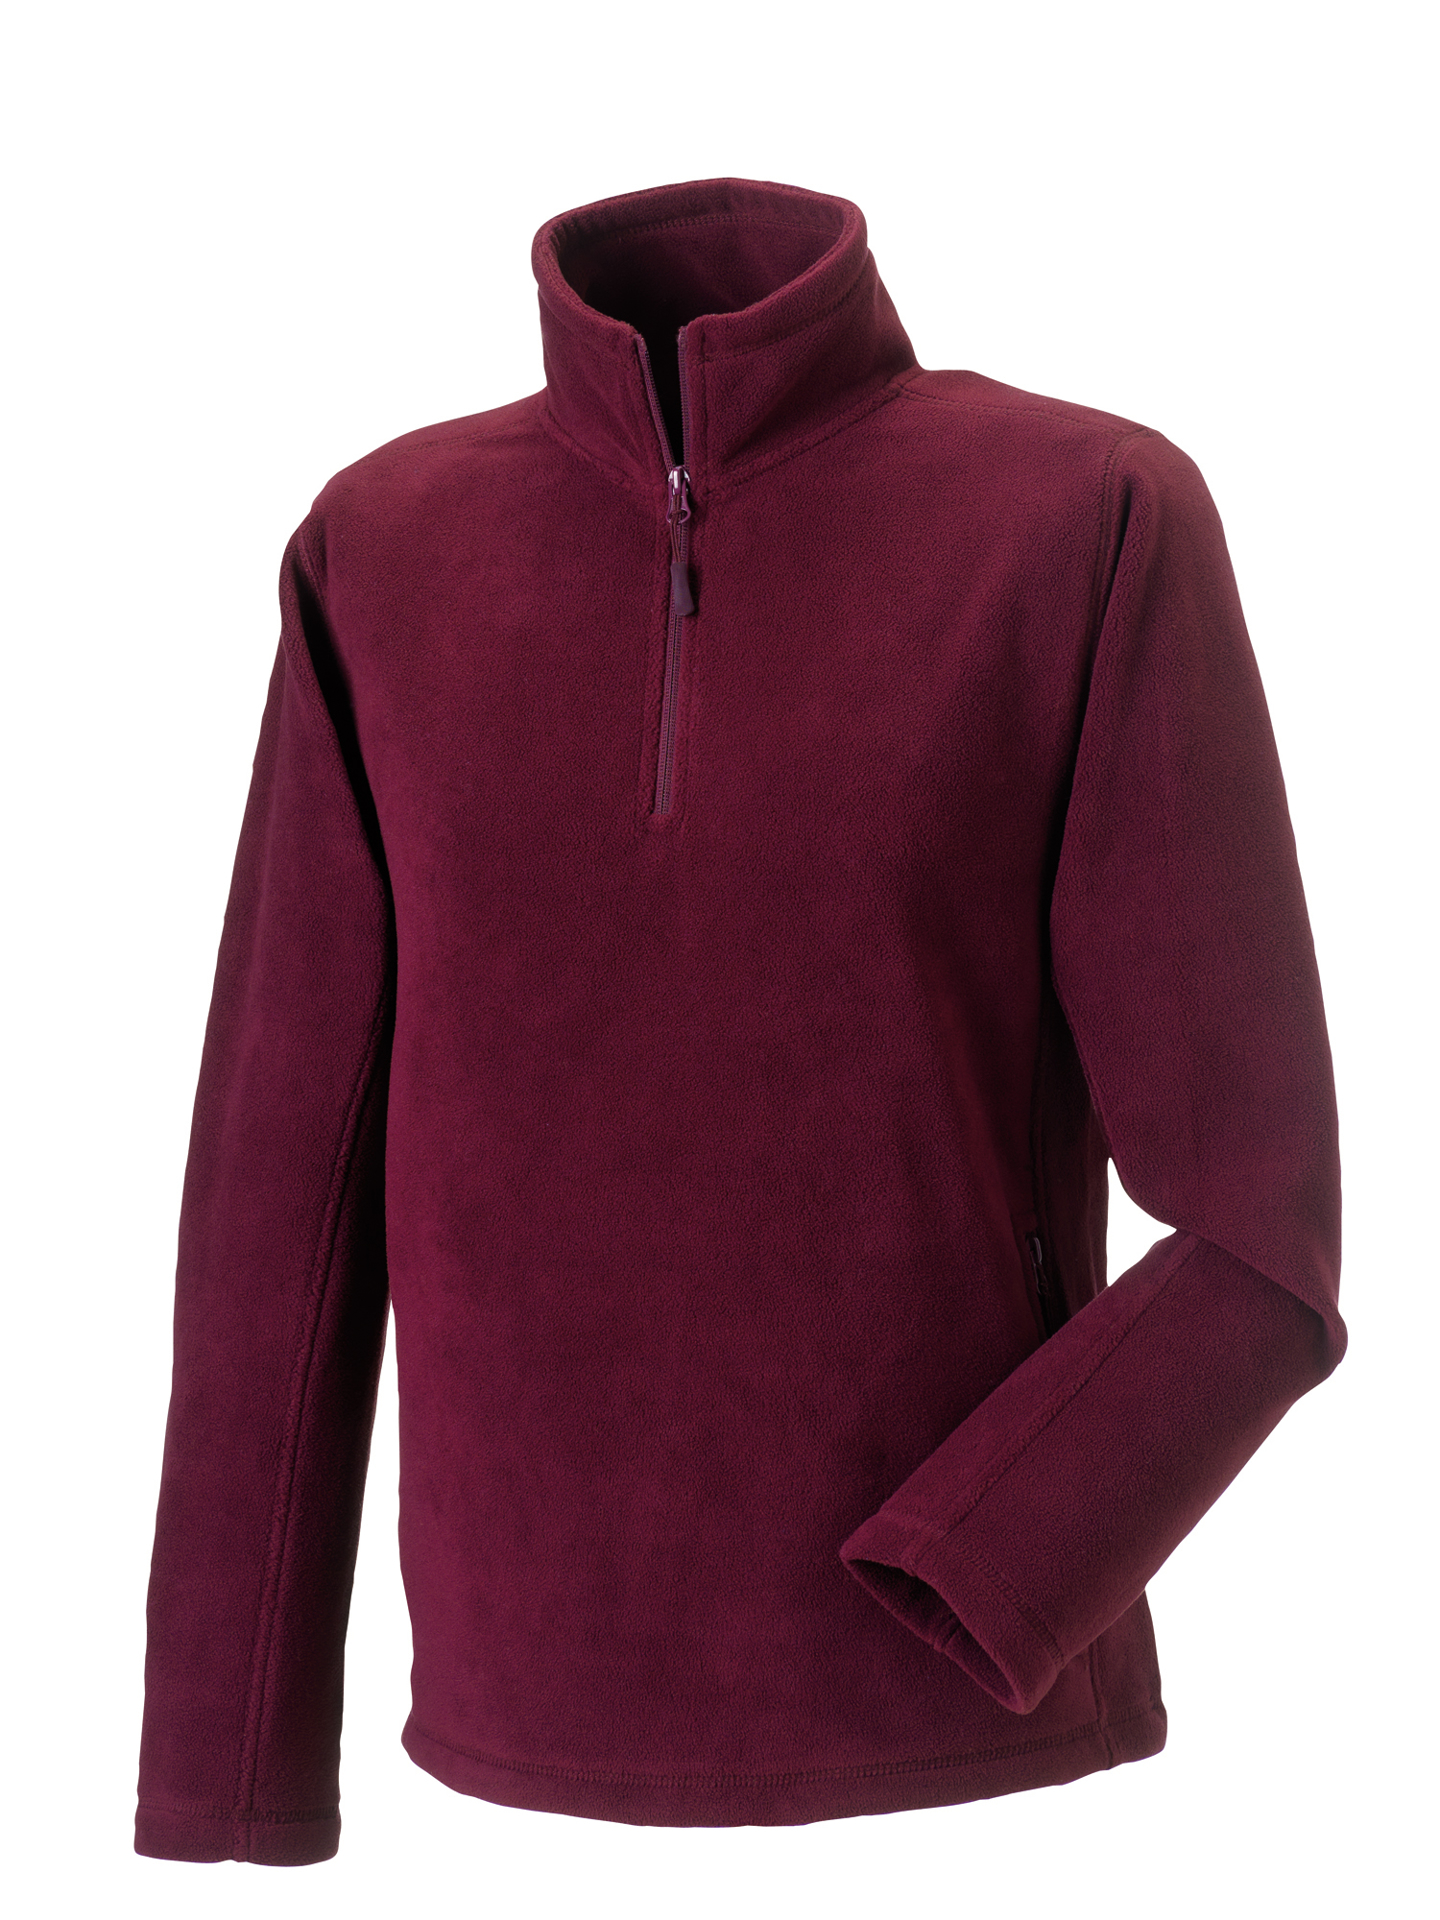 1/4 zip outdoor fleece in burgundy with cadet collar and pockets